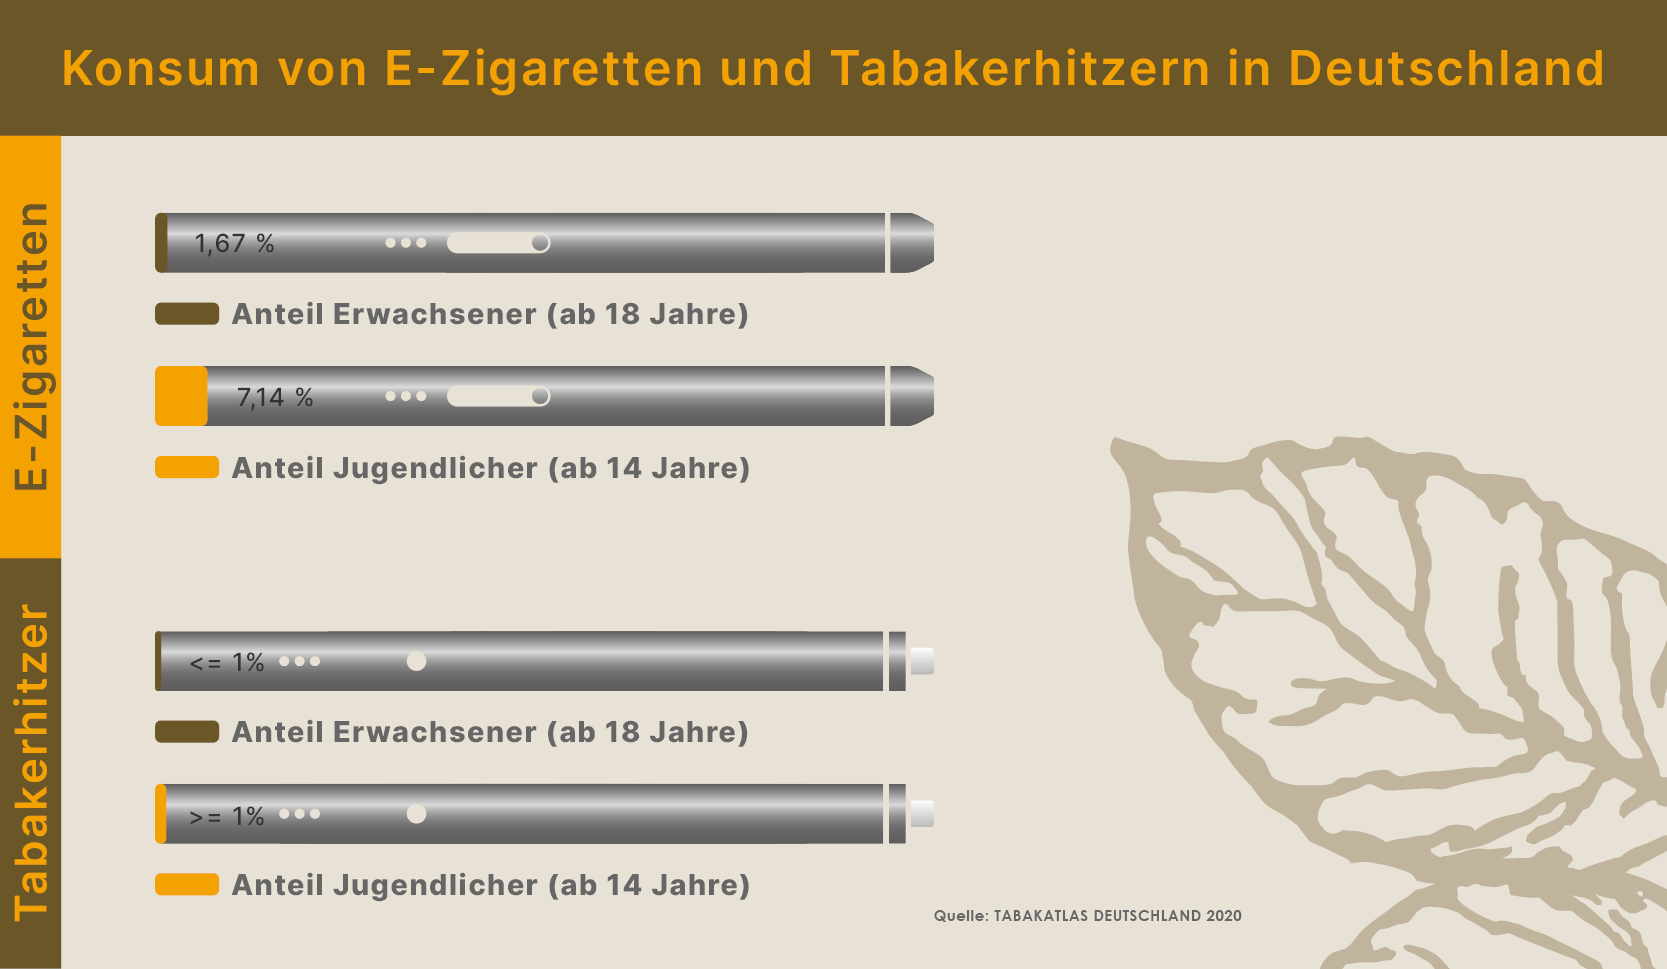 Vergleich des Konsums von Tabakerhitzern mit E-Zigaretten verschiedener Altersstufen